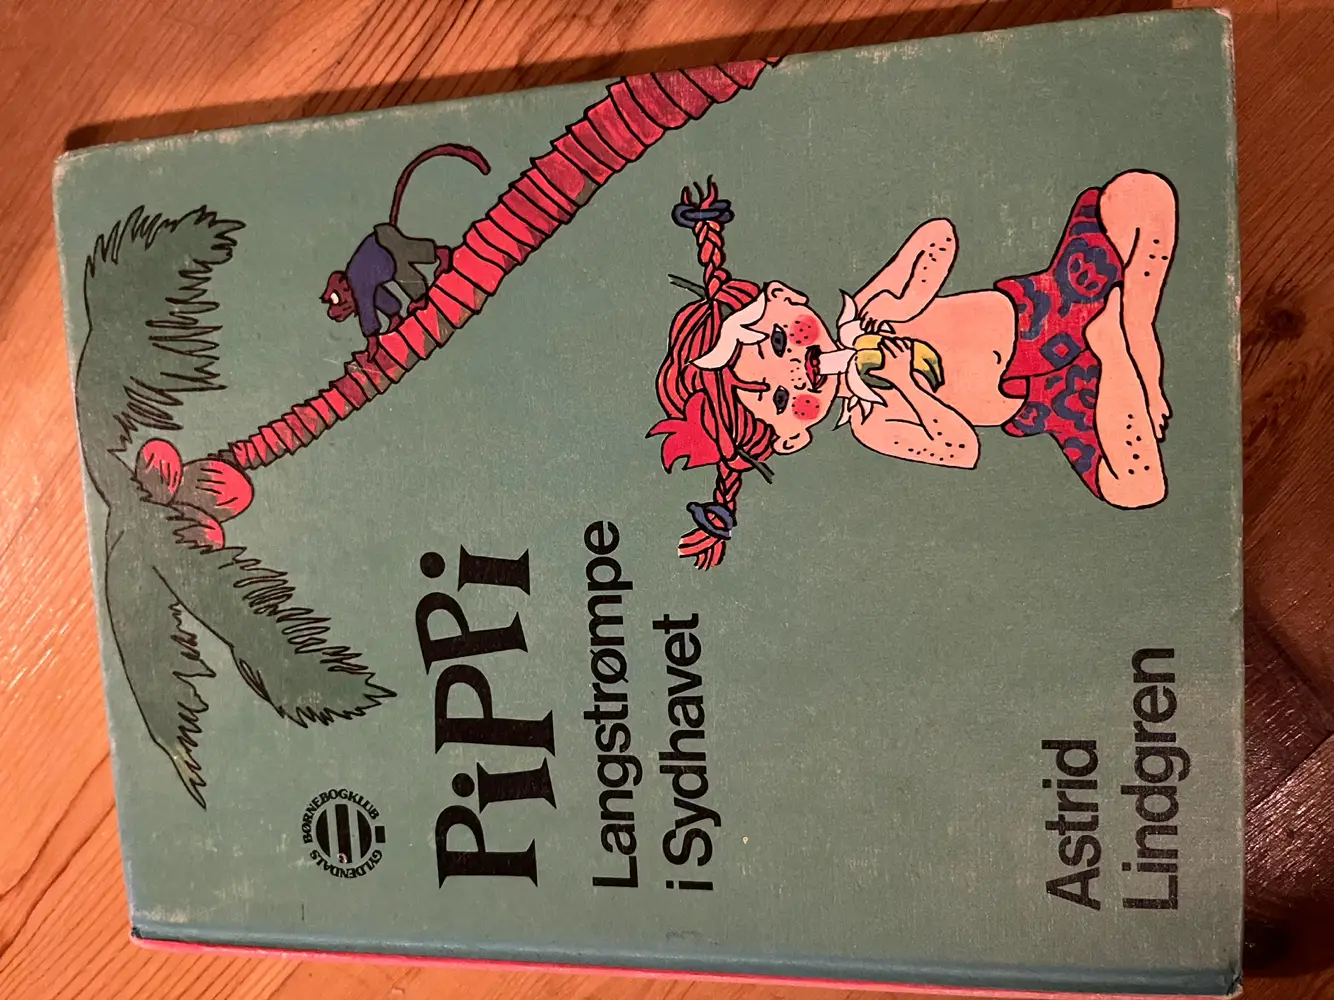 Pippi 3 Pippi bøger